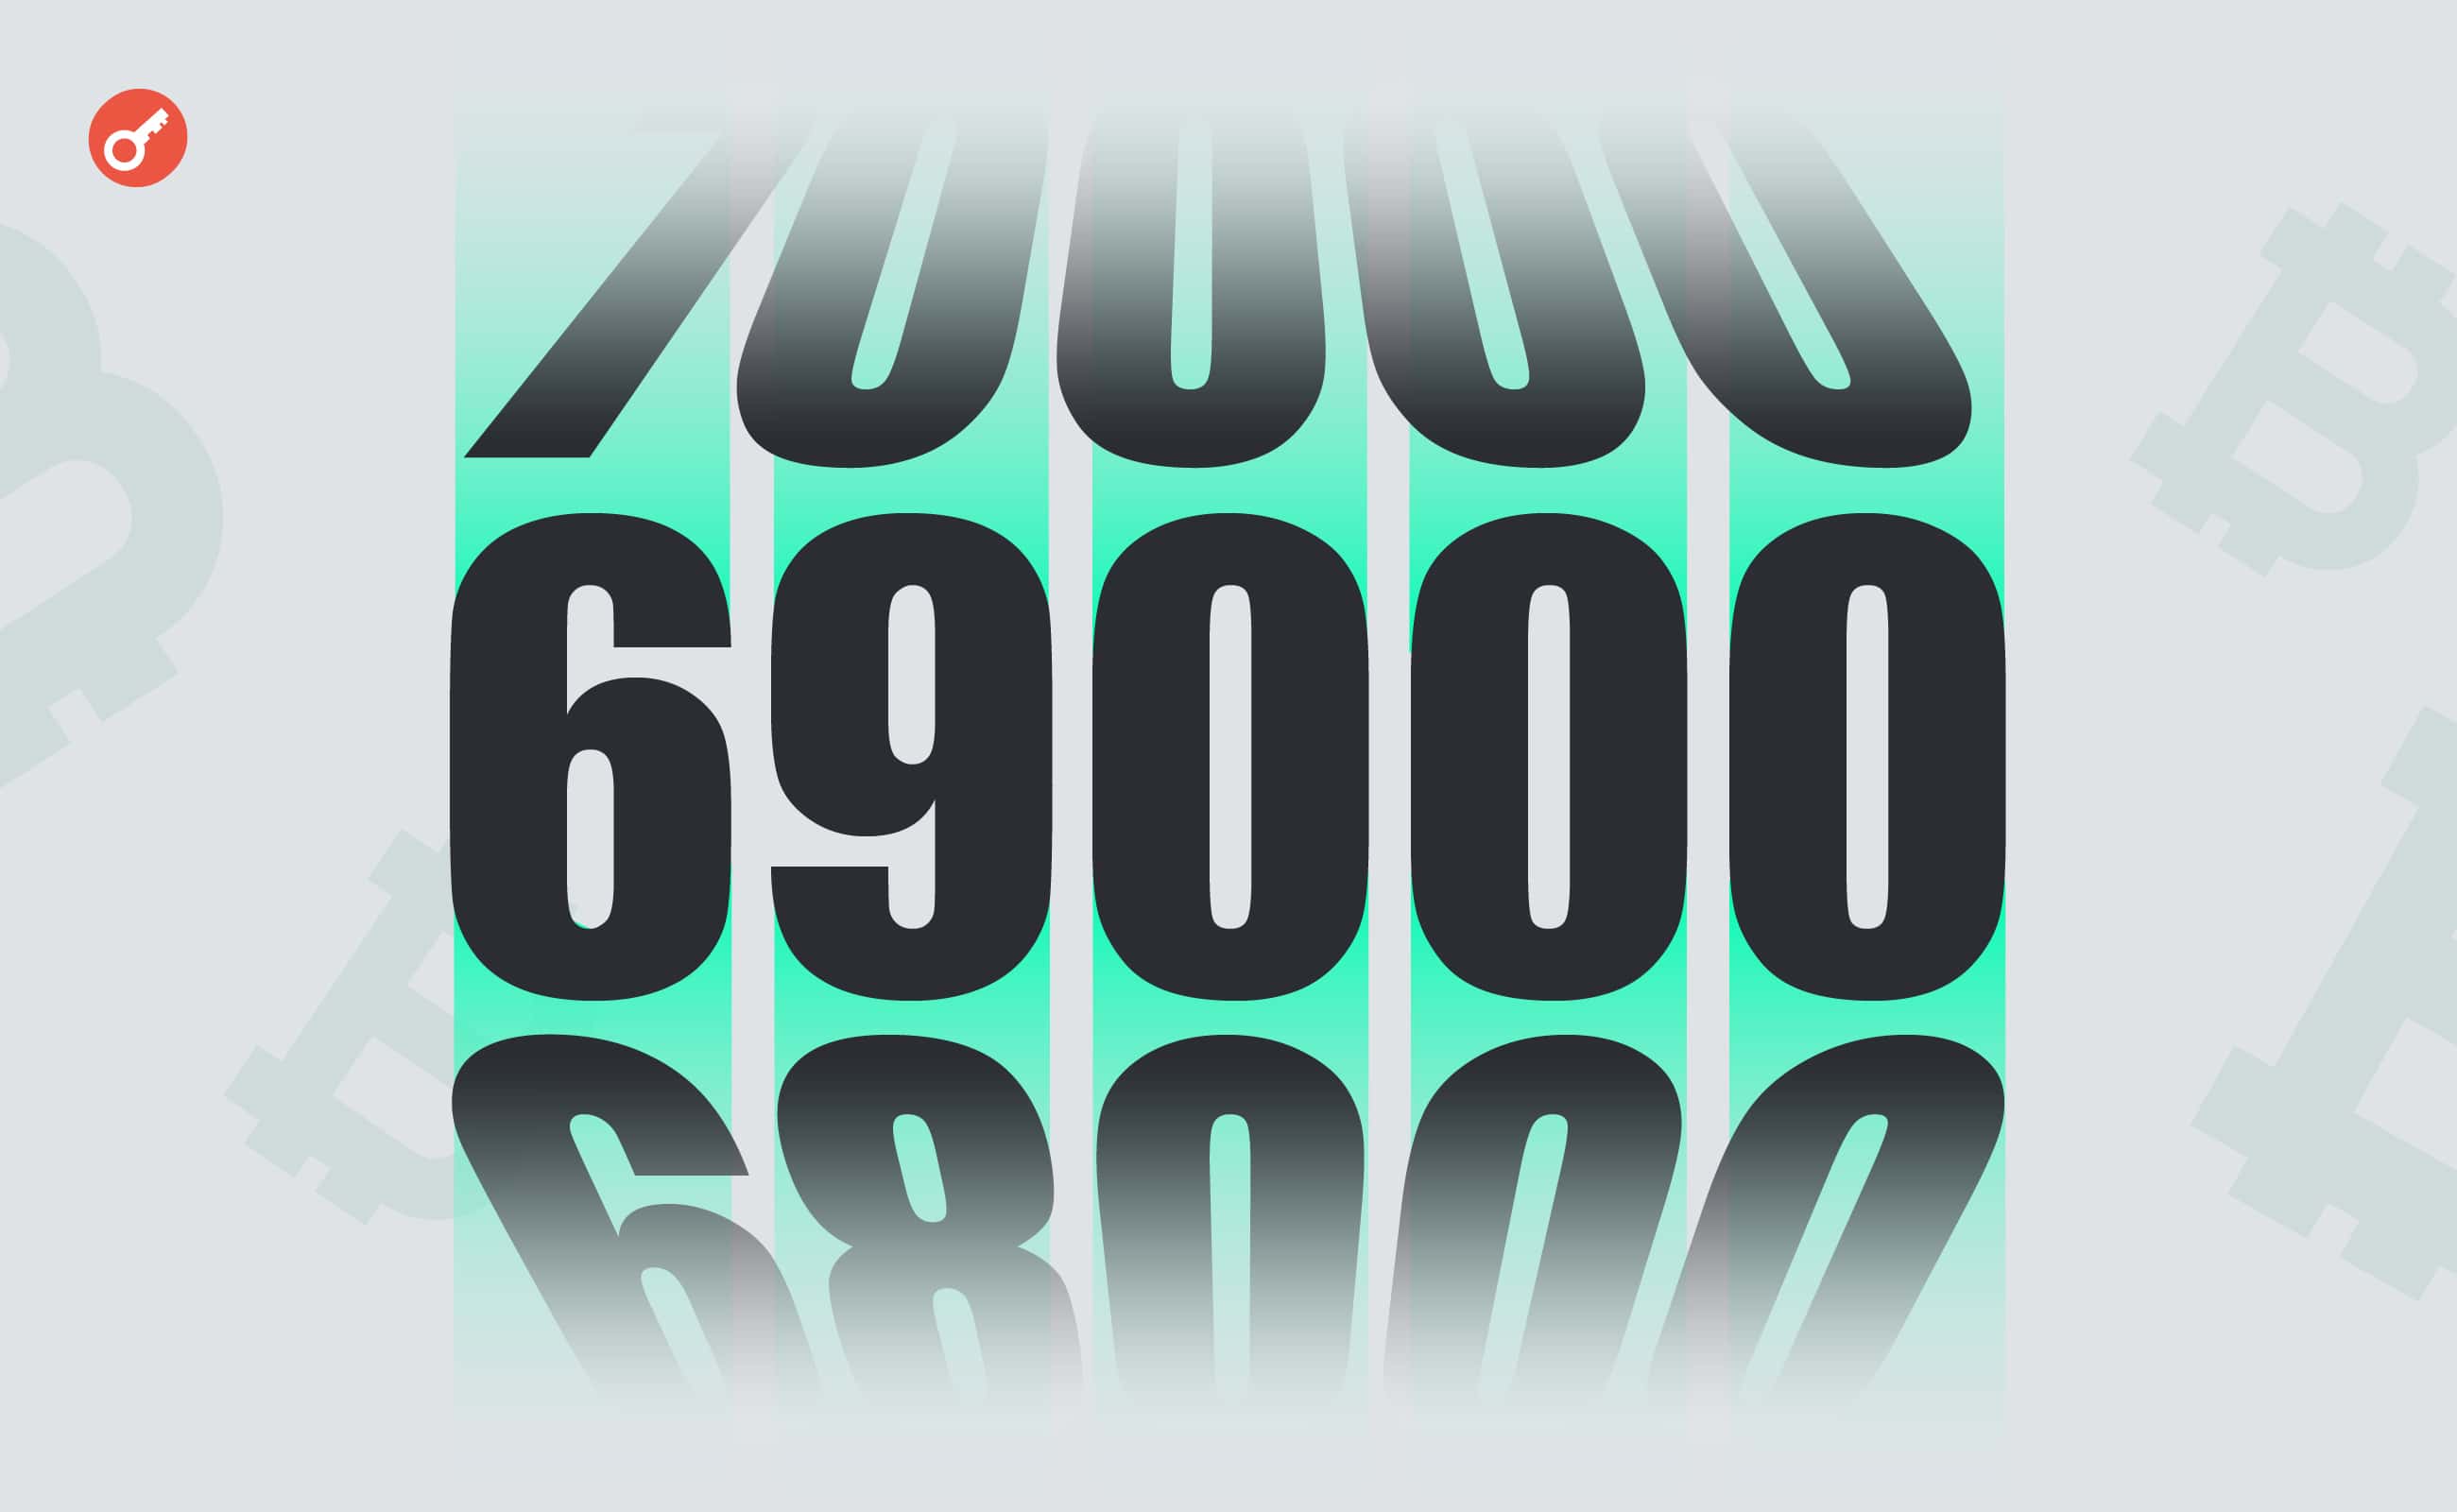 Cena bitcoina ustanowiła nowy rekord wszech czasów powyżej 69 000 USD. Główny kolaż wiadomości.